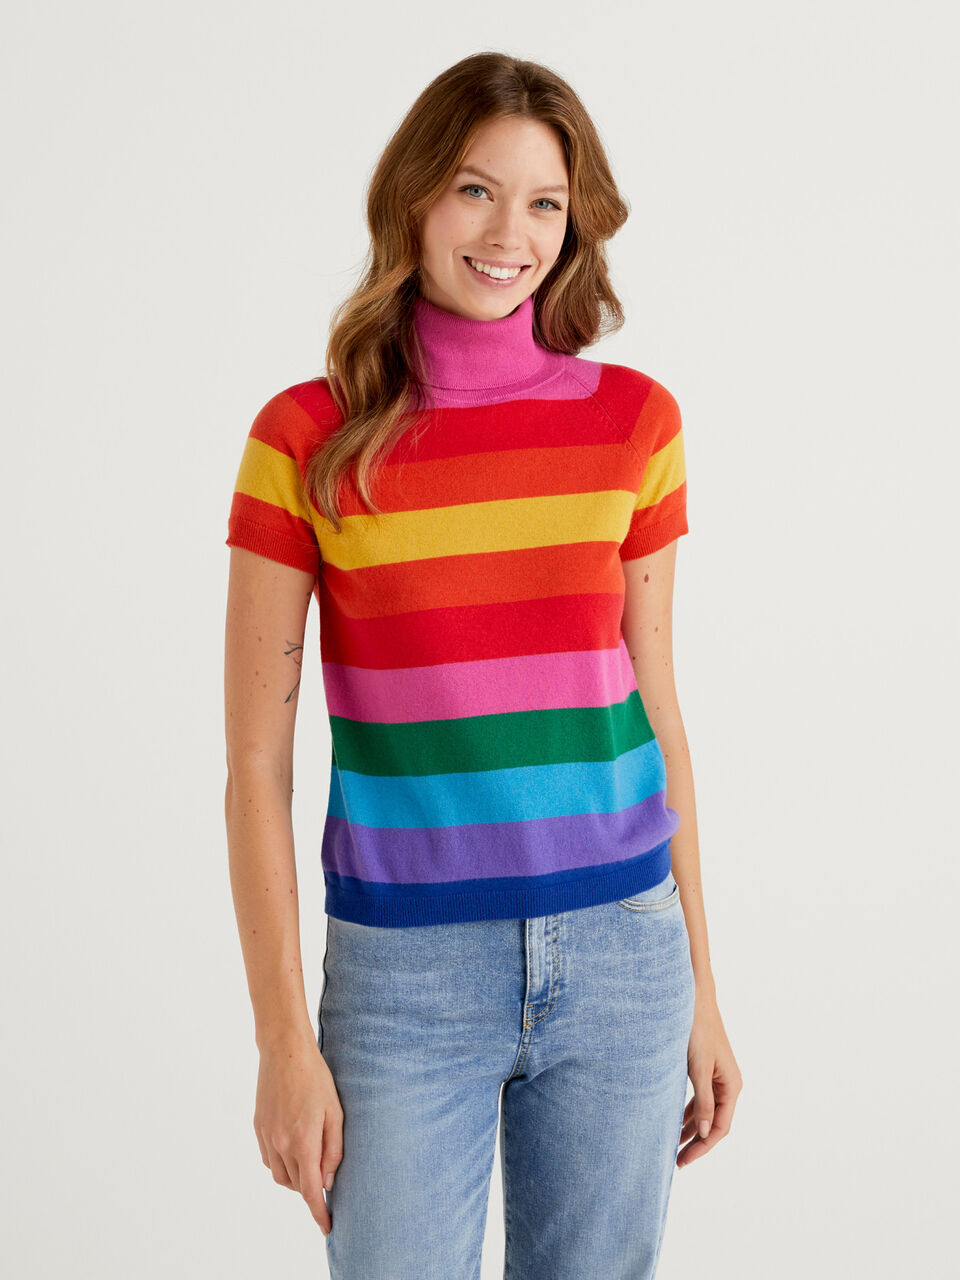 Camiseta cuello alto a rayas - Multi-color